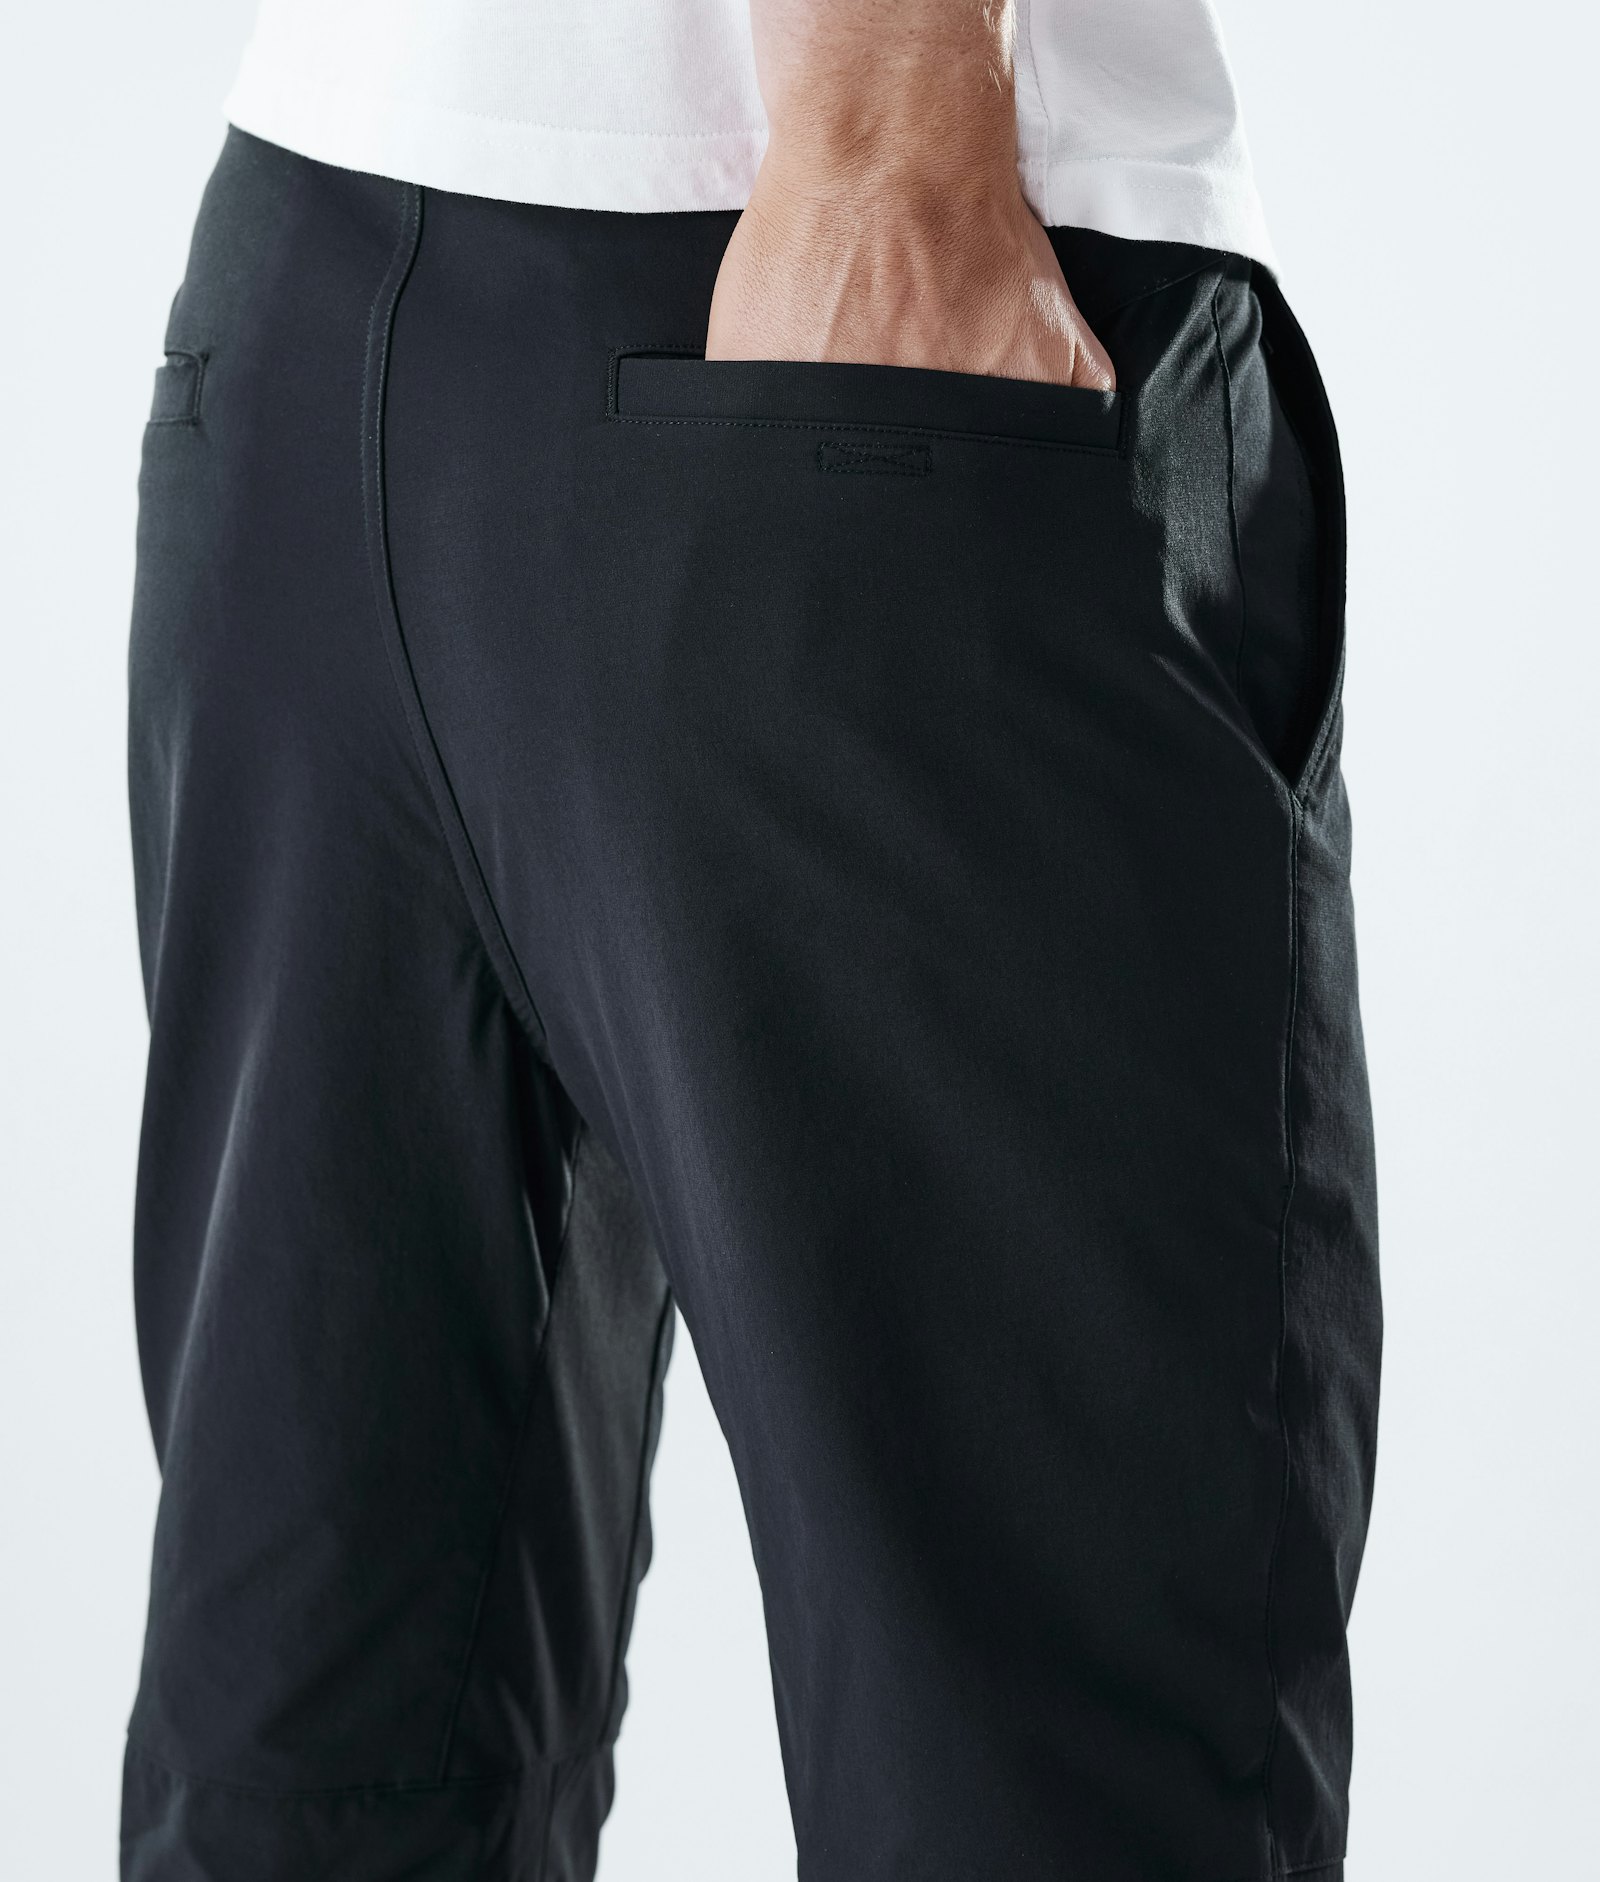 Dope Rover Tech 2021 Outdoor Pants Men Black, Image 6 of 11